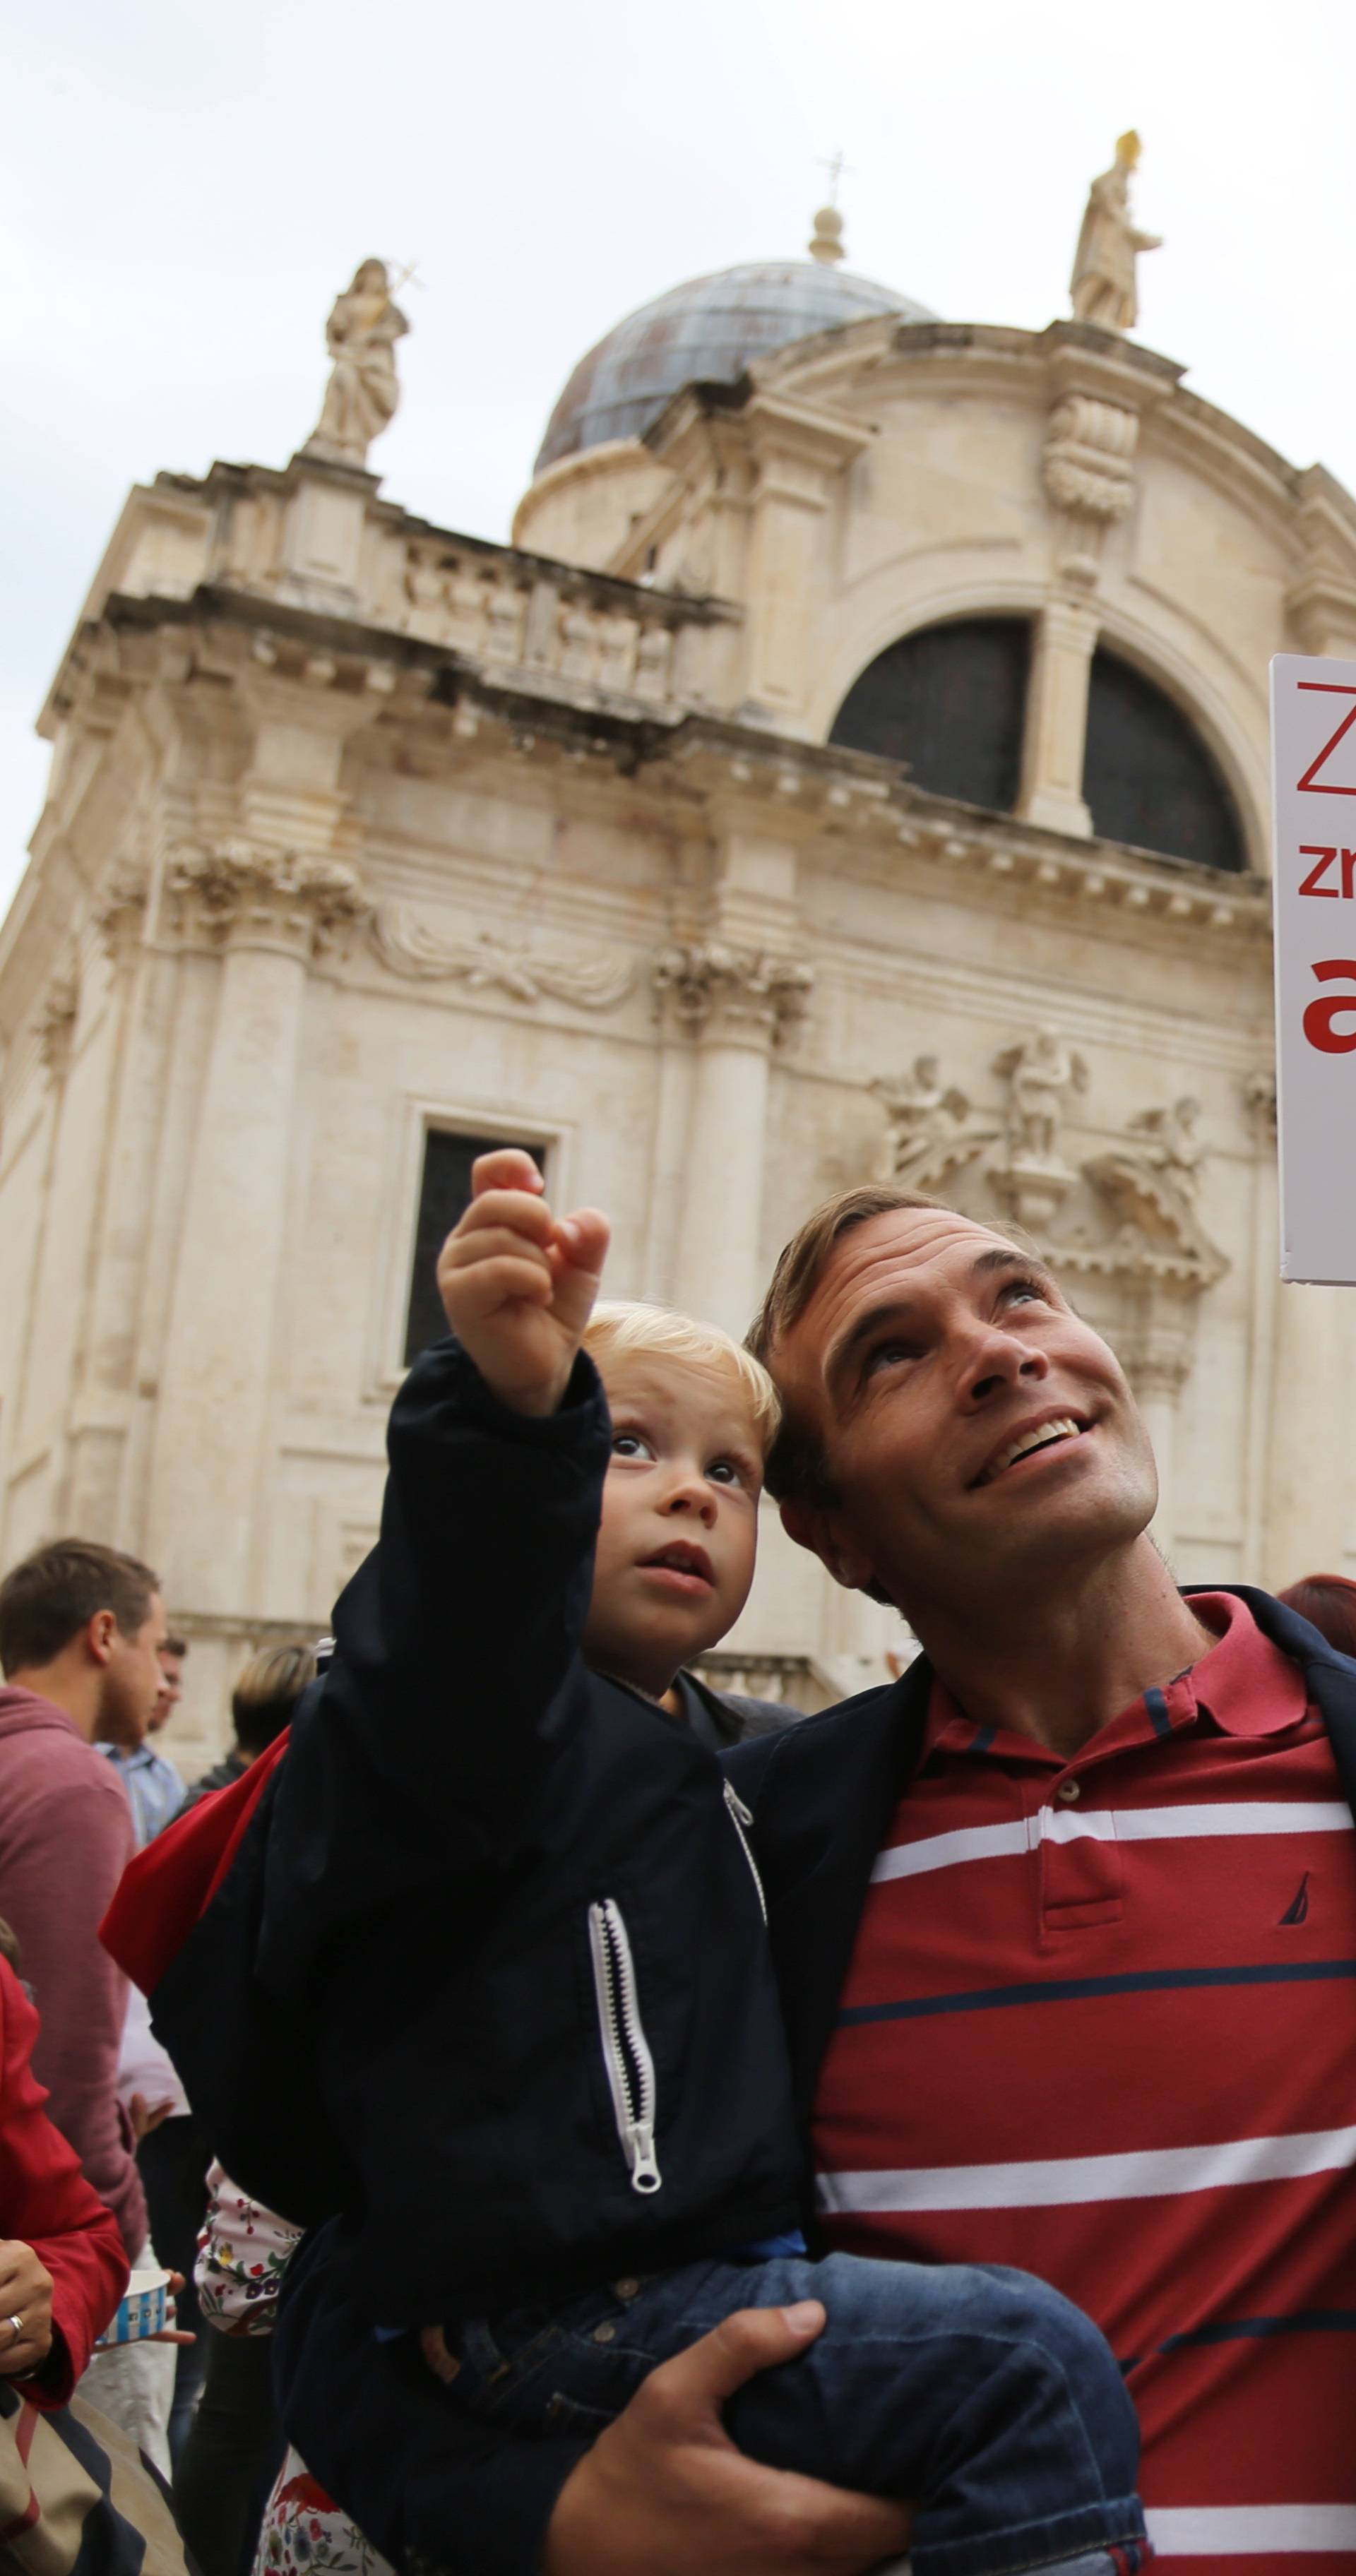 Hrvatska podigla glas za bolje obrazovanje i budućnost djece